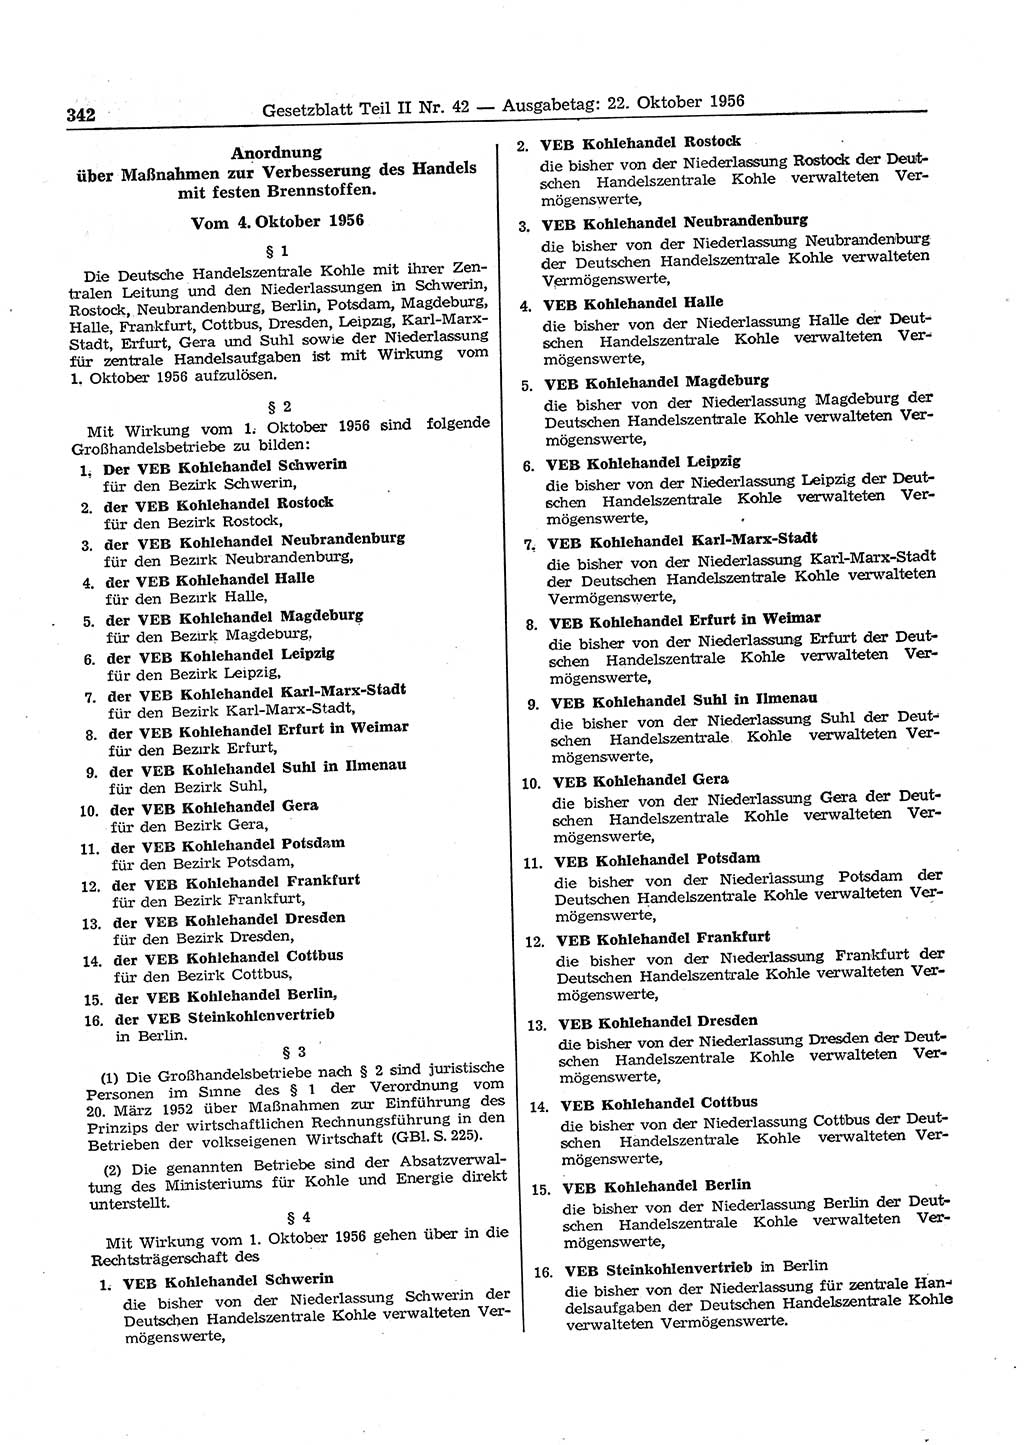 Gesetzblatt (GBl.) der Deutschen Demokratischen Republik (DDR) Teil ⅠⅠ 1956, Seite 342 (GBl. DDR ⅠⅠ 1956, S. 342)